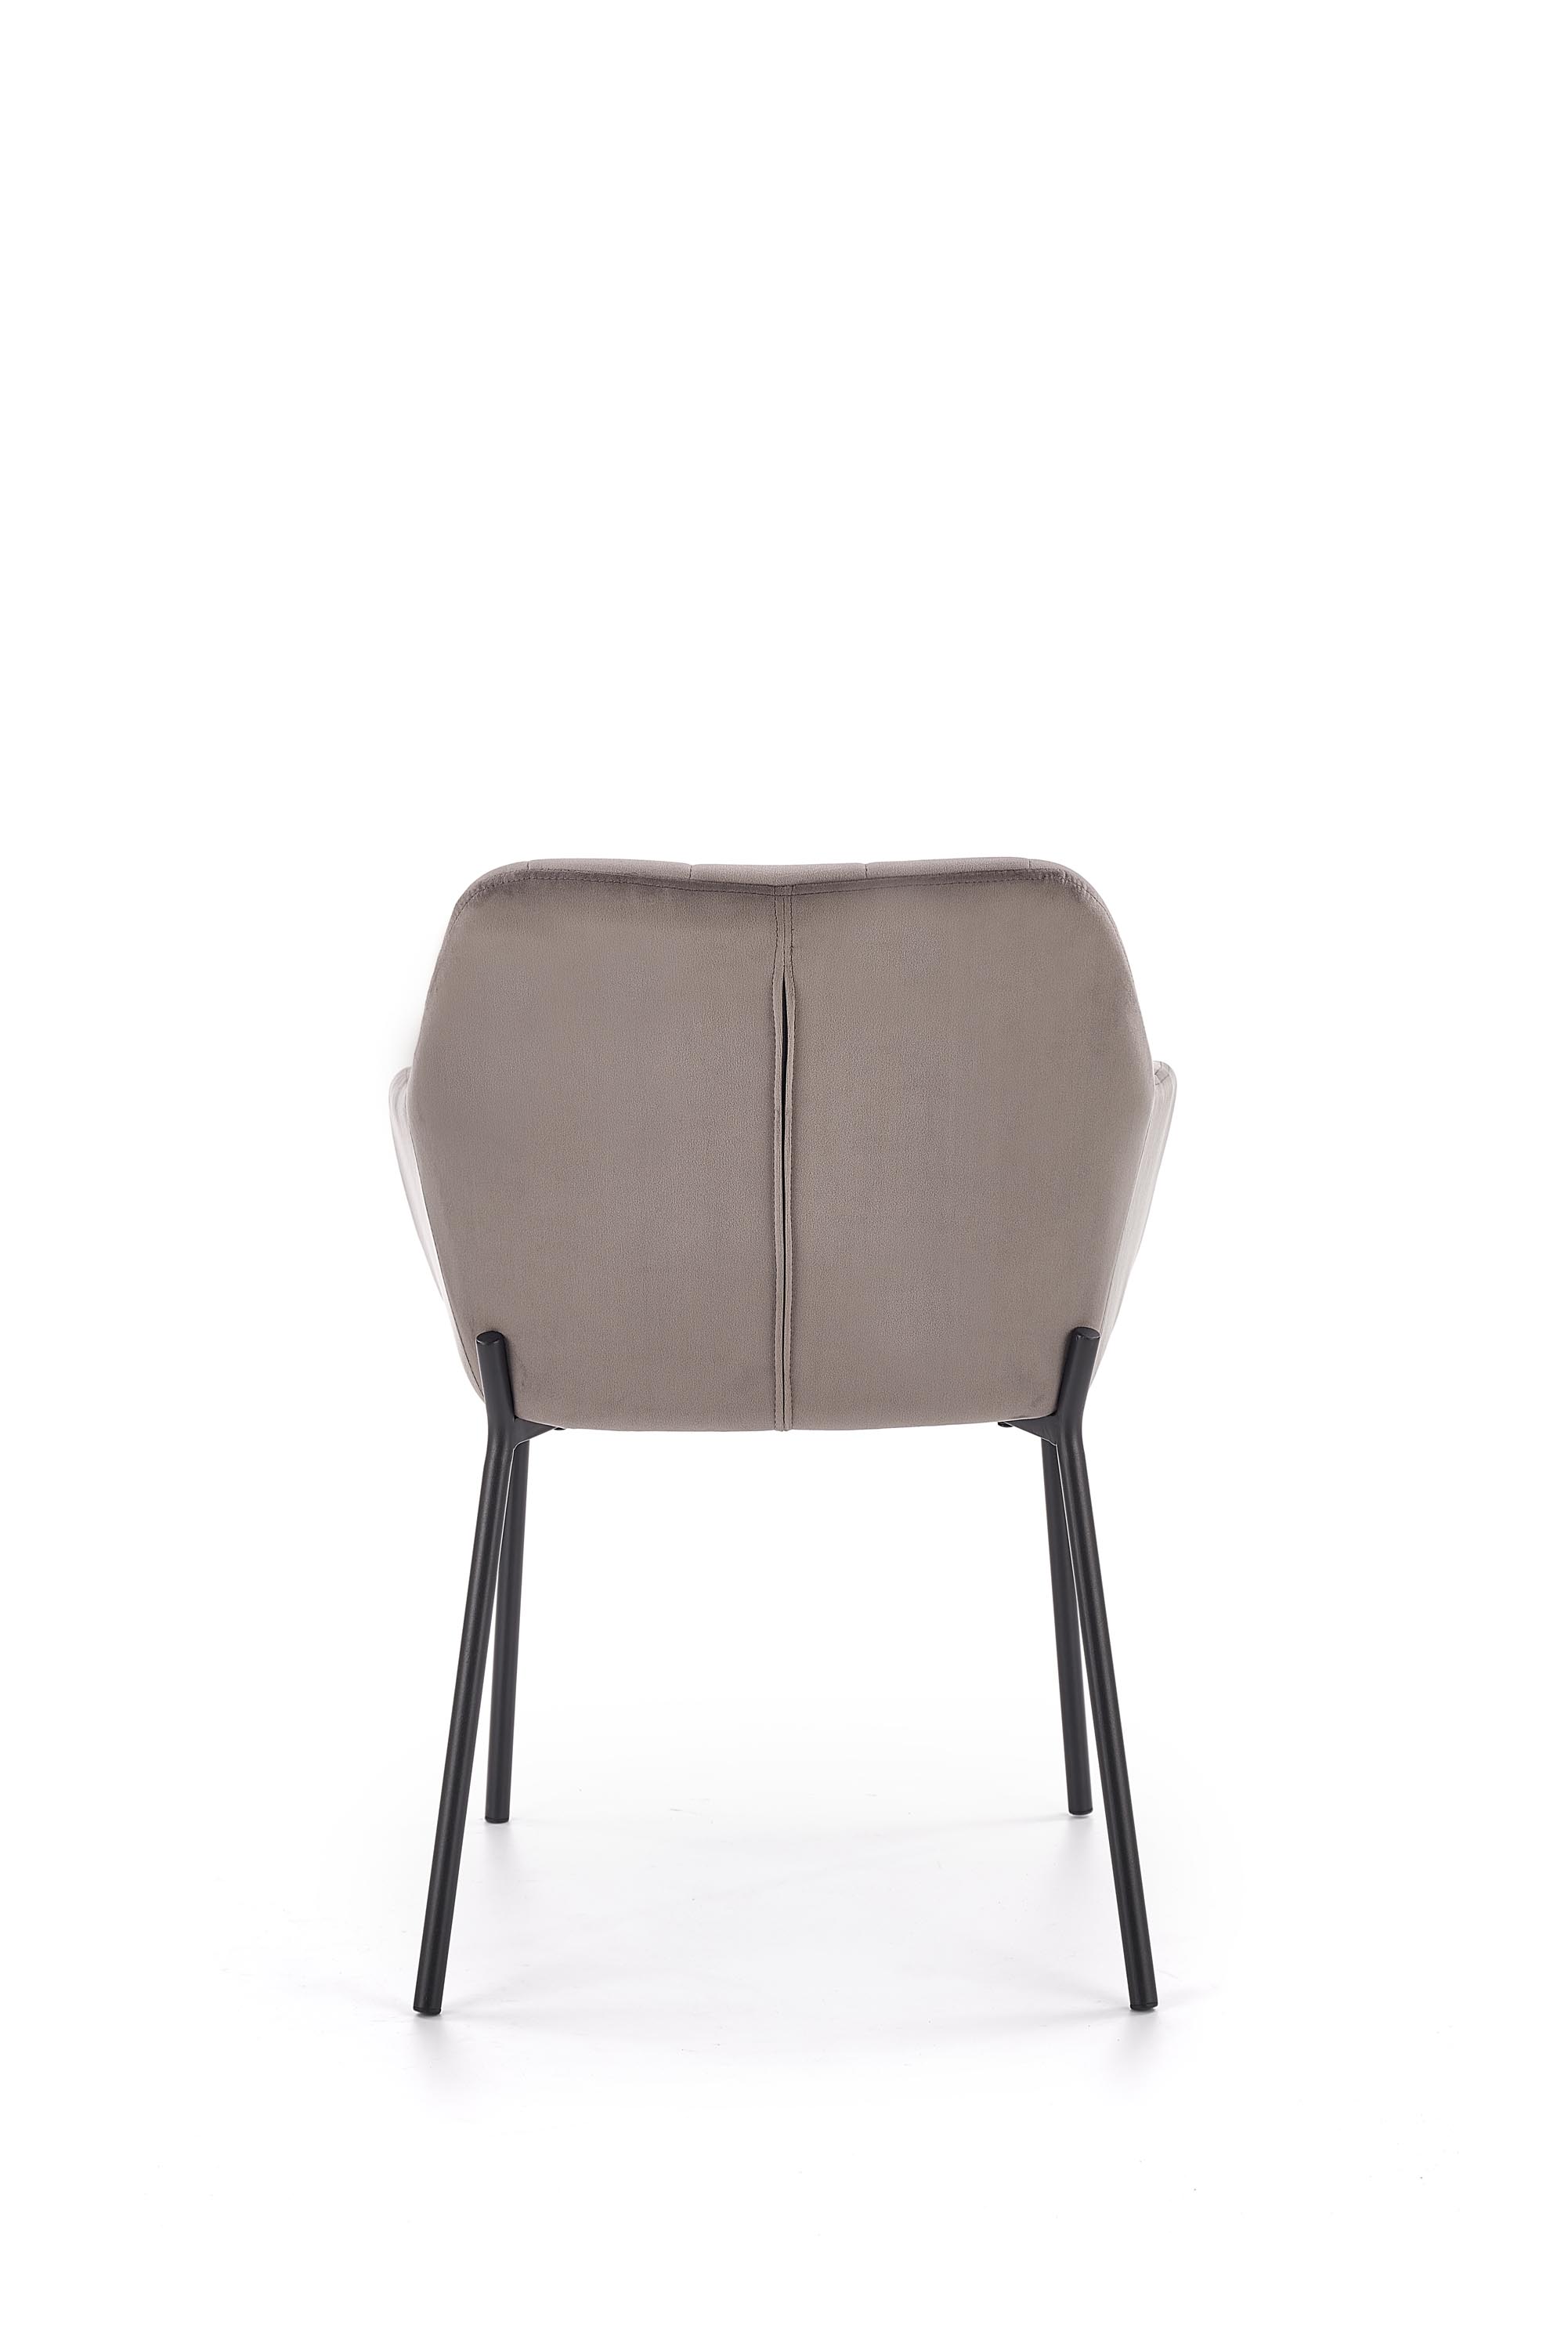 Židle K305 - Popelový / Fekete Židle k305 - Popelový / Fekete